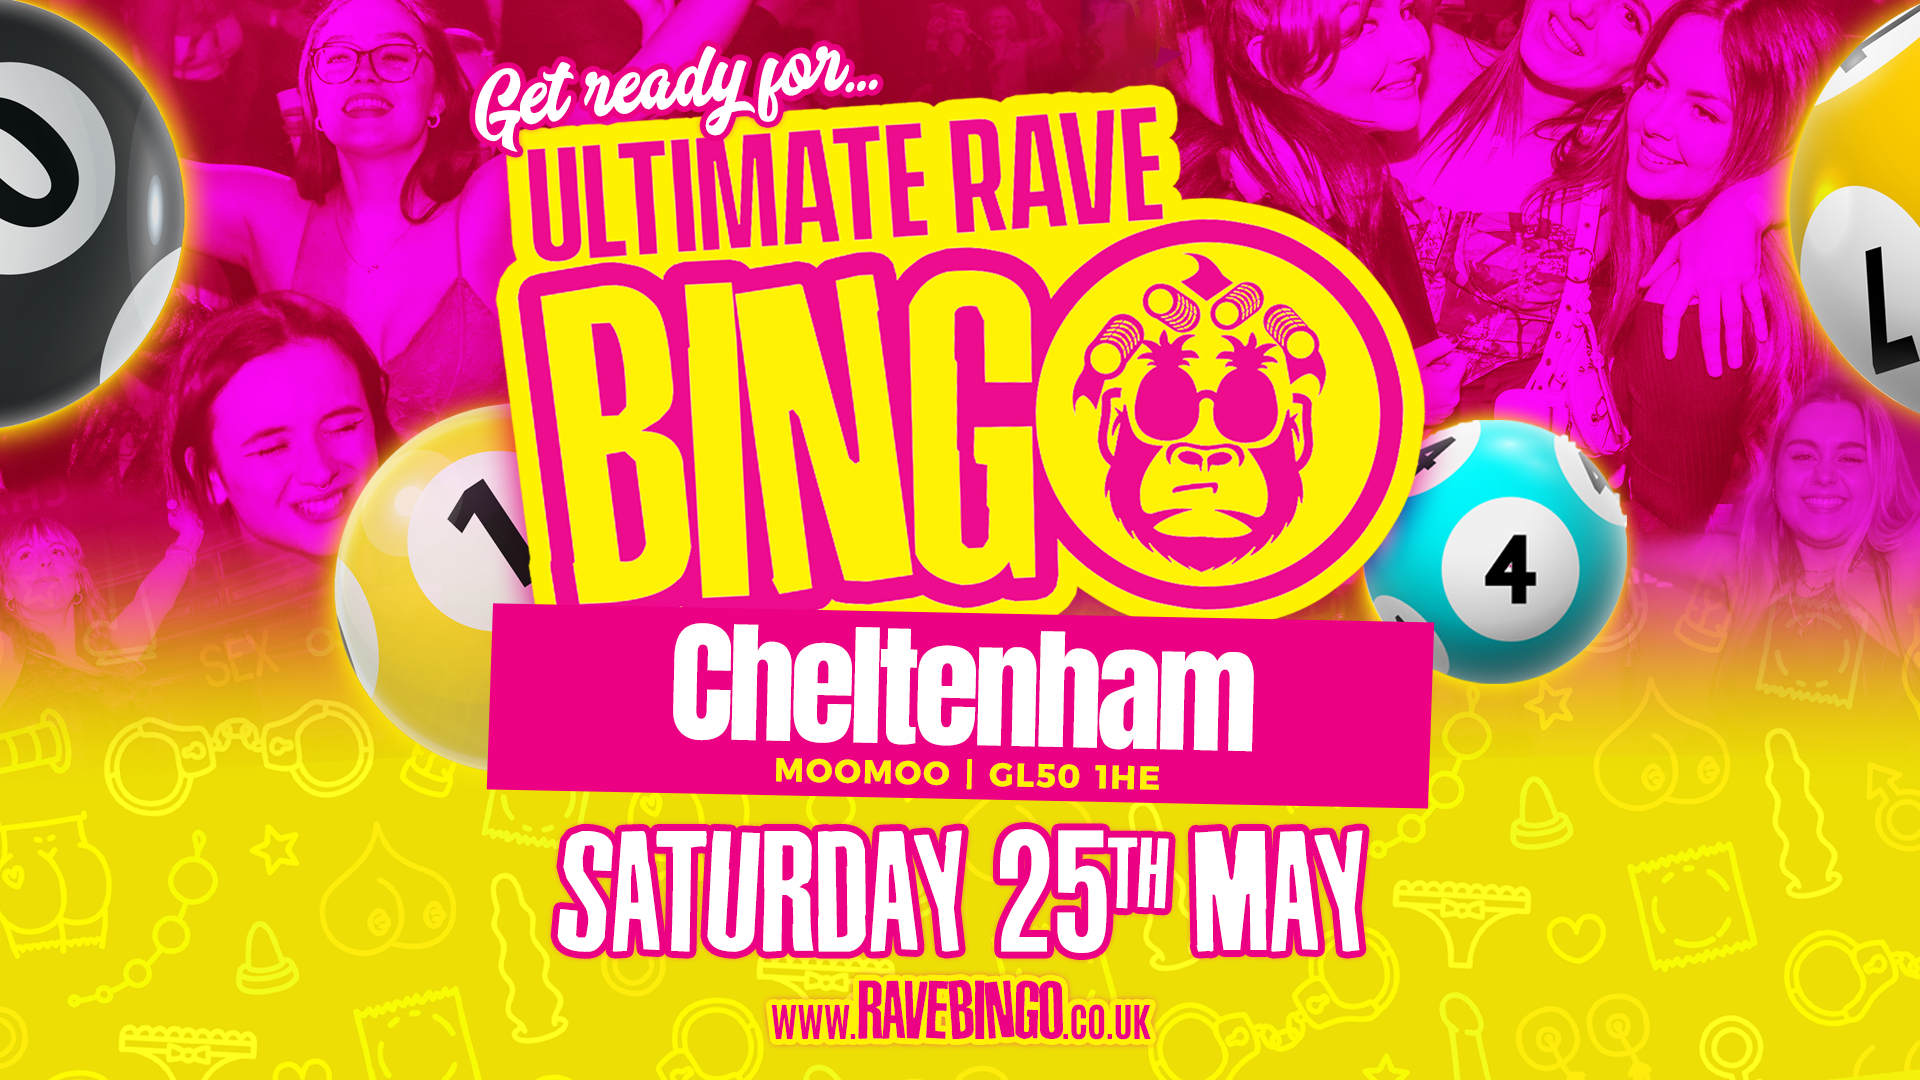 Ultimate Rave Bingo // Cheltenham // Saturday 25th May